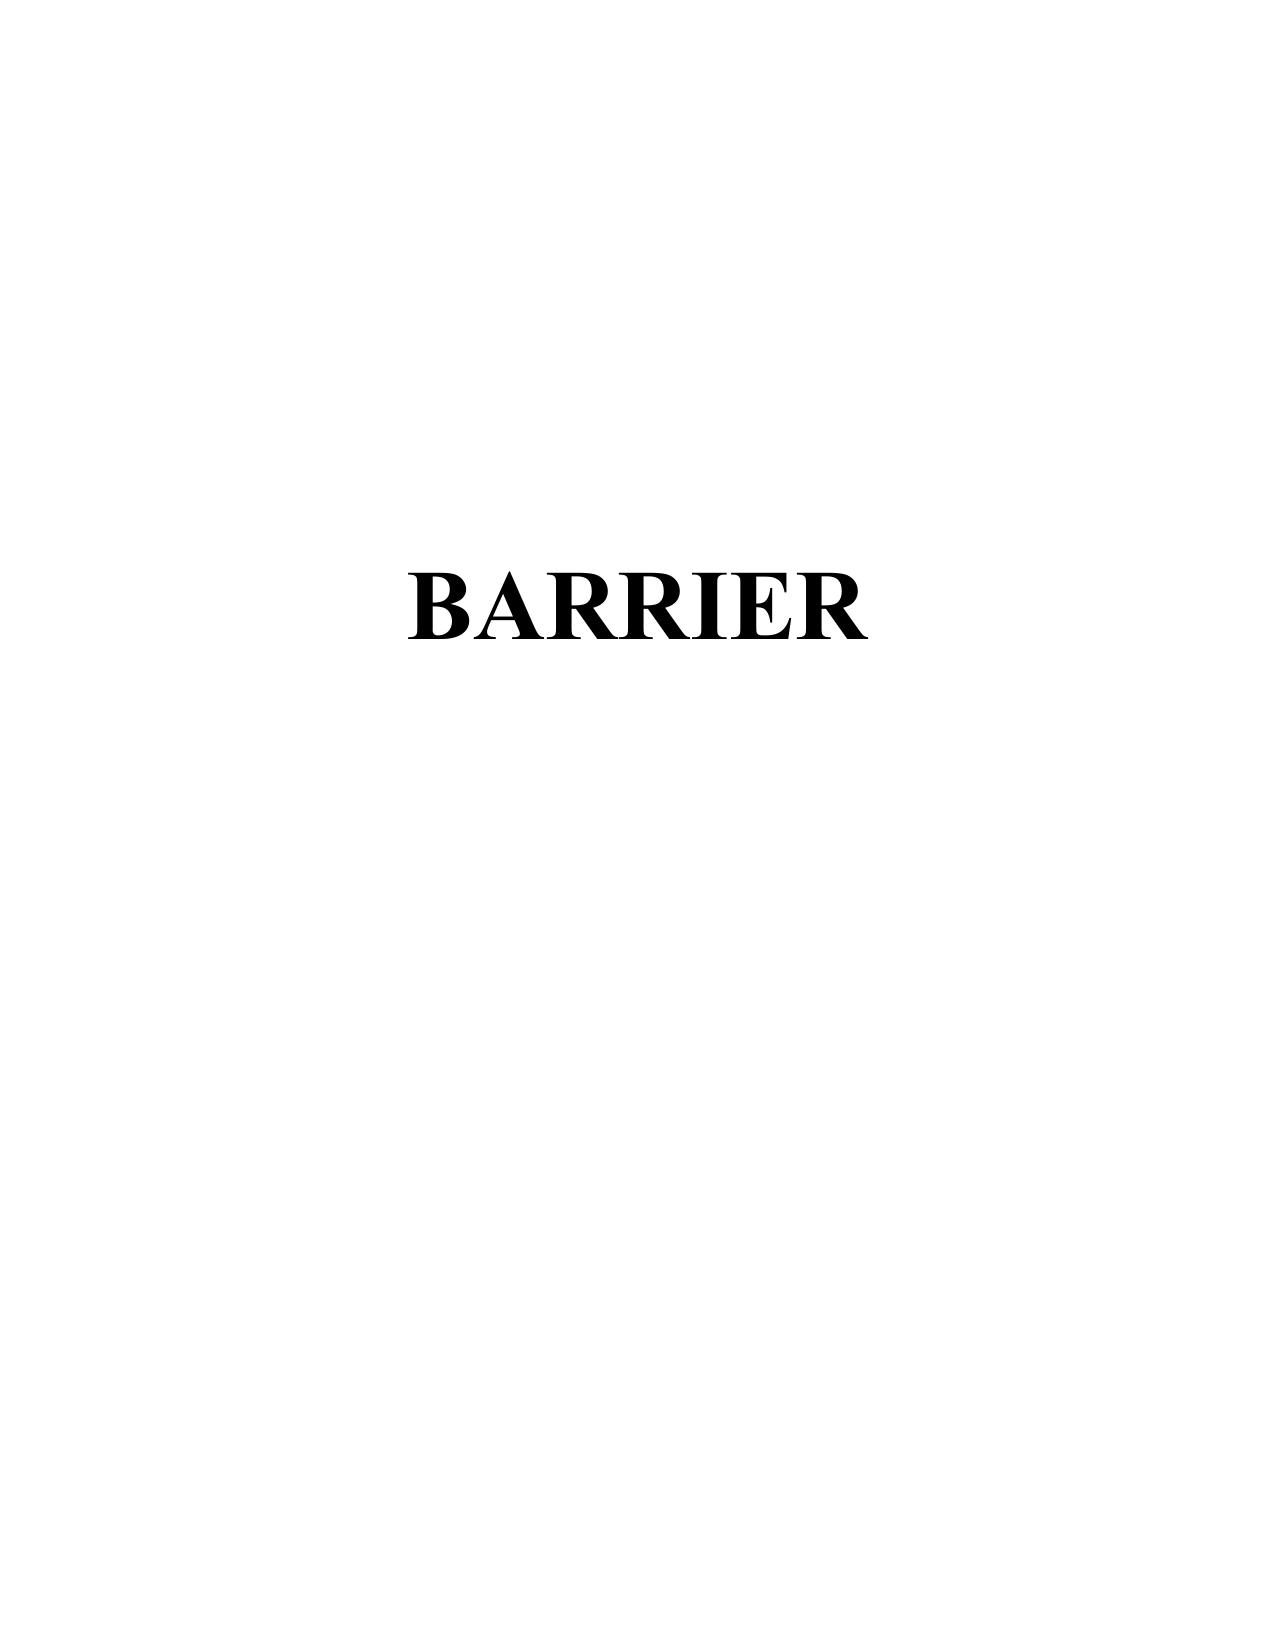 Microsoft Word - barrier_theoryschematics.doc